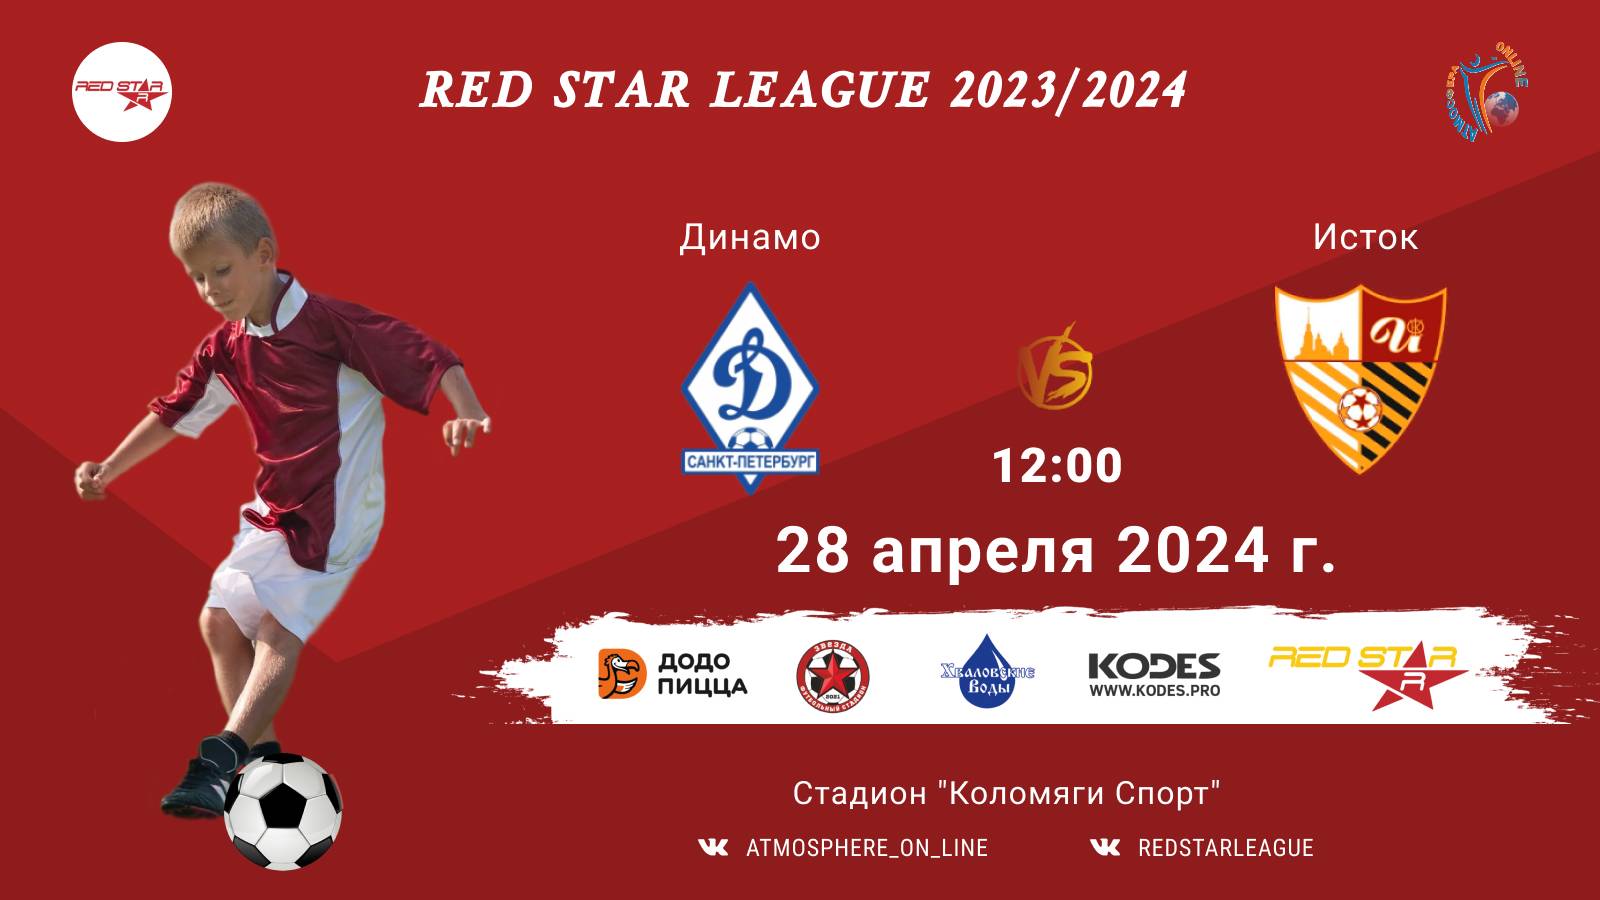 ФК "Динамо" - ФК "Исток"/Red Star League, 28-04-2024 12:00